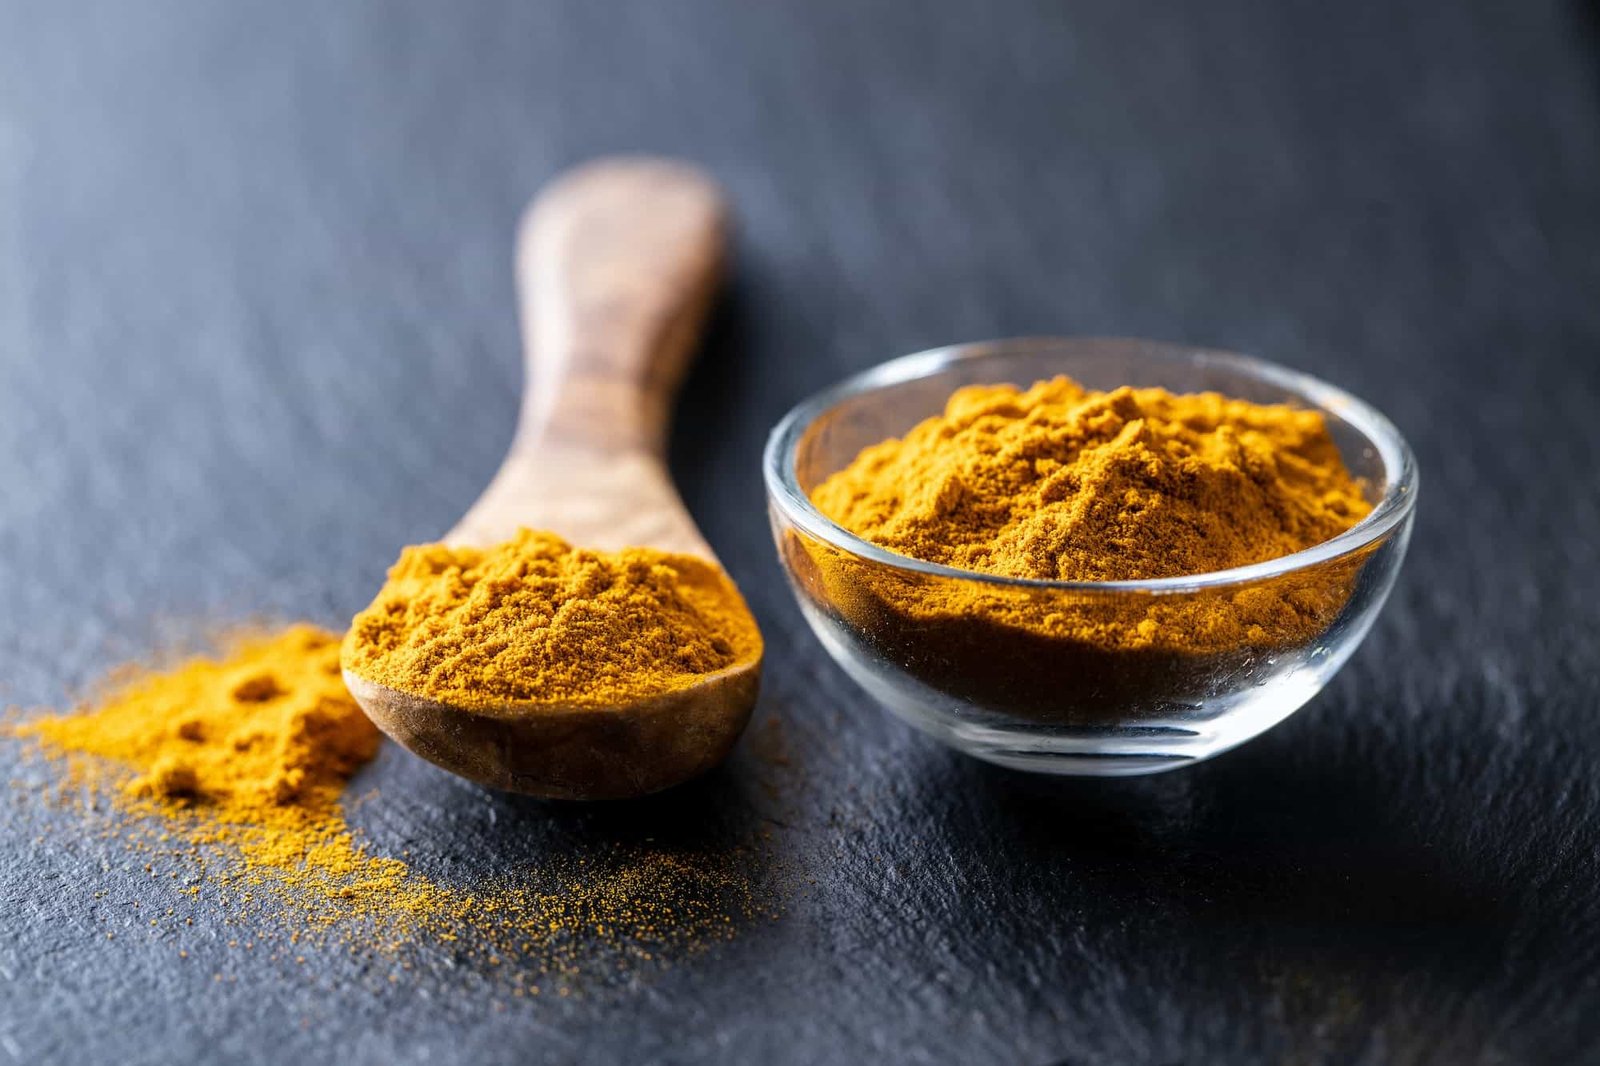 Indian turmeric powder. Turmeric spice. Ground turmeric